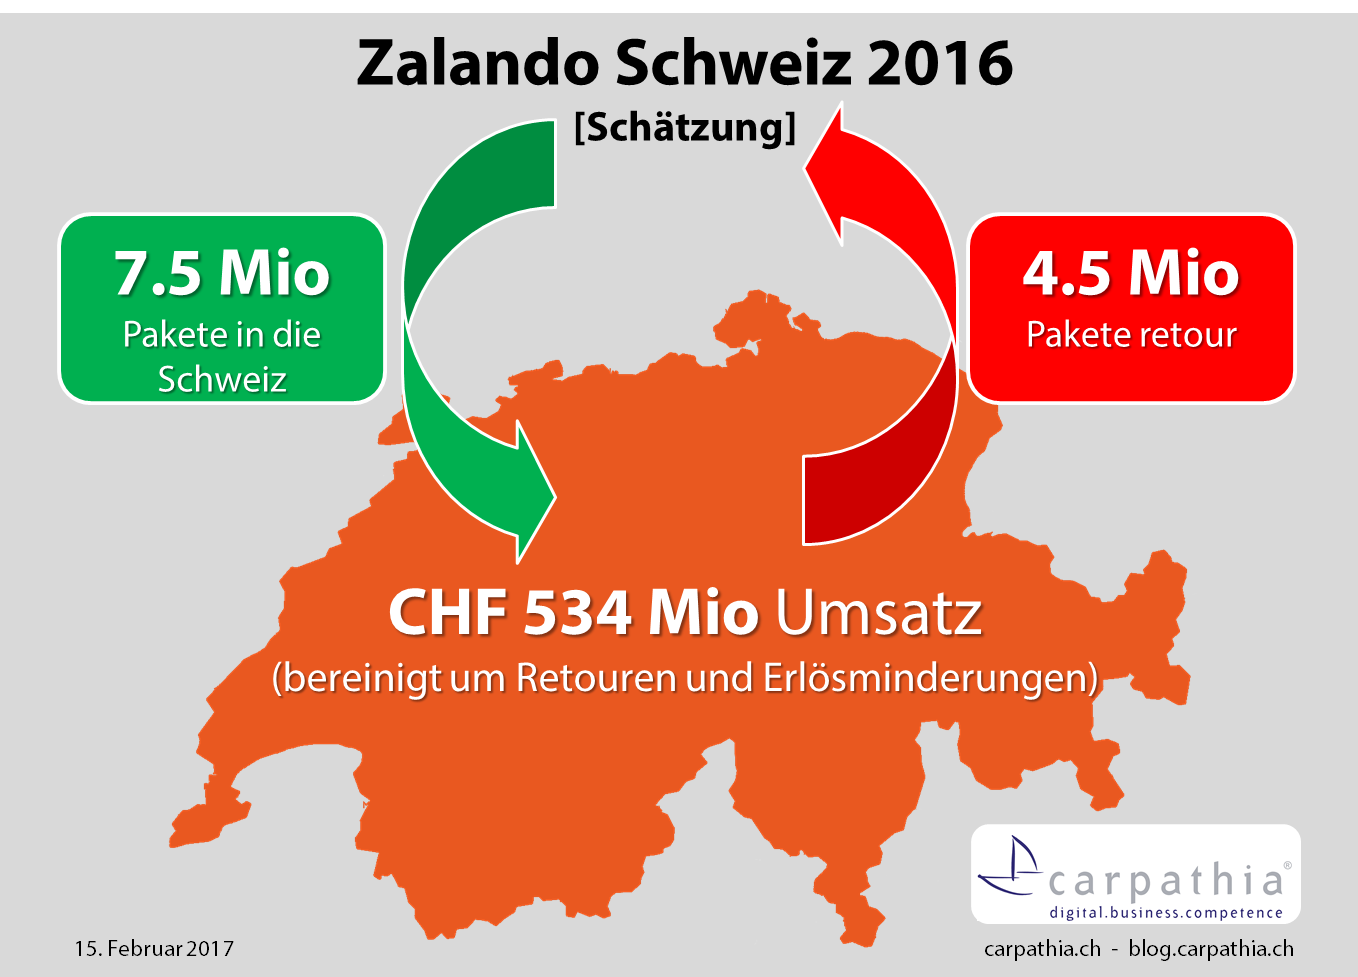 Schätzung Umsatz und Paketmengen Zalando Schweiz 2016 - Quelle: Carpathia AG